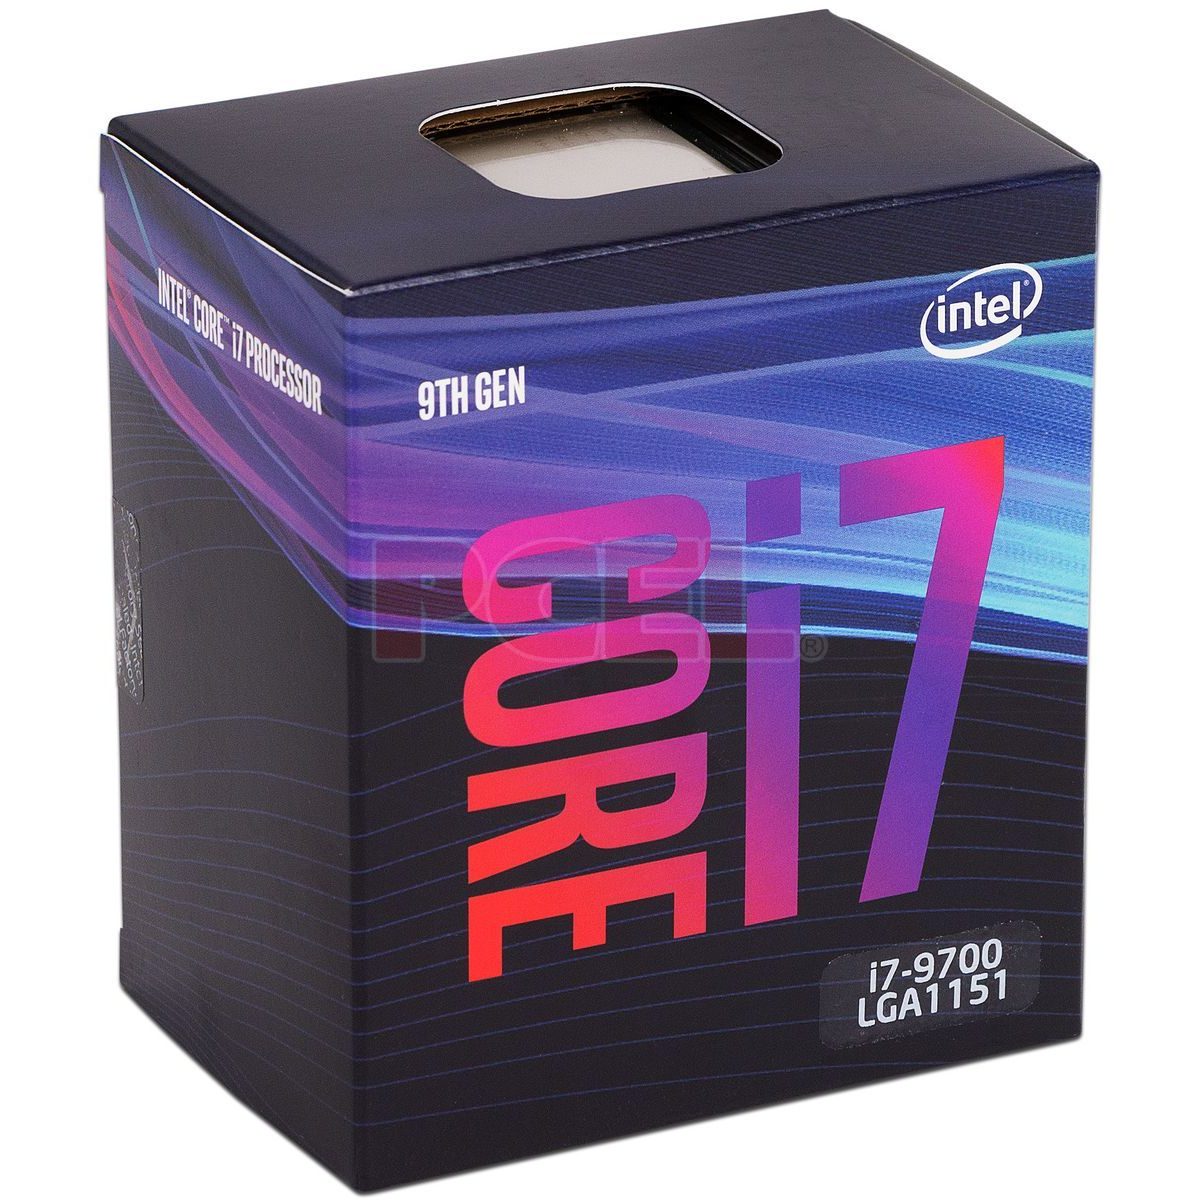 Intel Core i7-9700 1151 3GHz 8-Core 9na. Generación BX80684I79700 999J2R